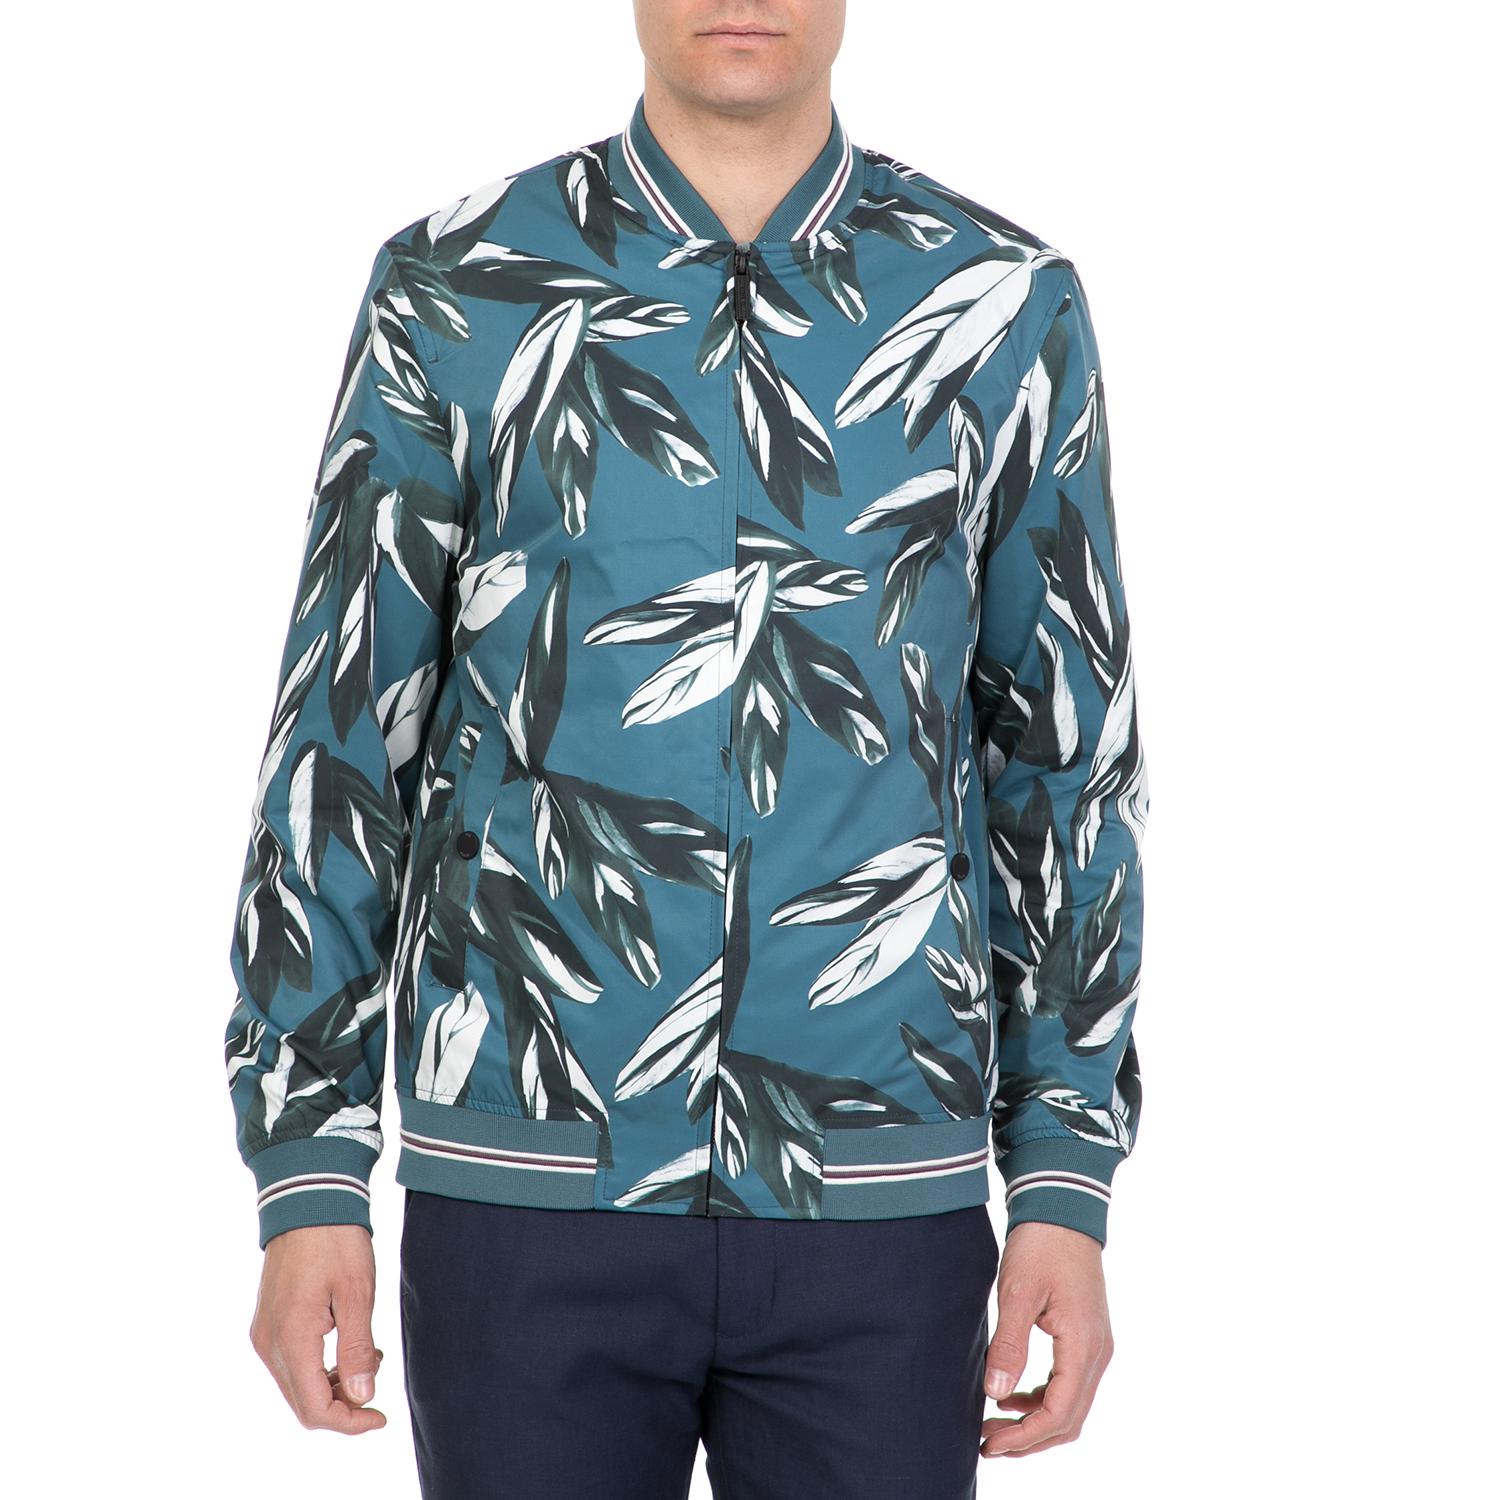 Ανδρικά/Ρούχα/Πανωφόρια/Τζάκετς TED BAKER - Ανδρικό bomber jacket TOTH LEAF PRINT μπλε